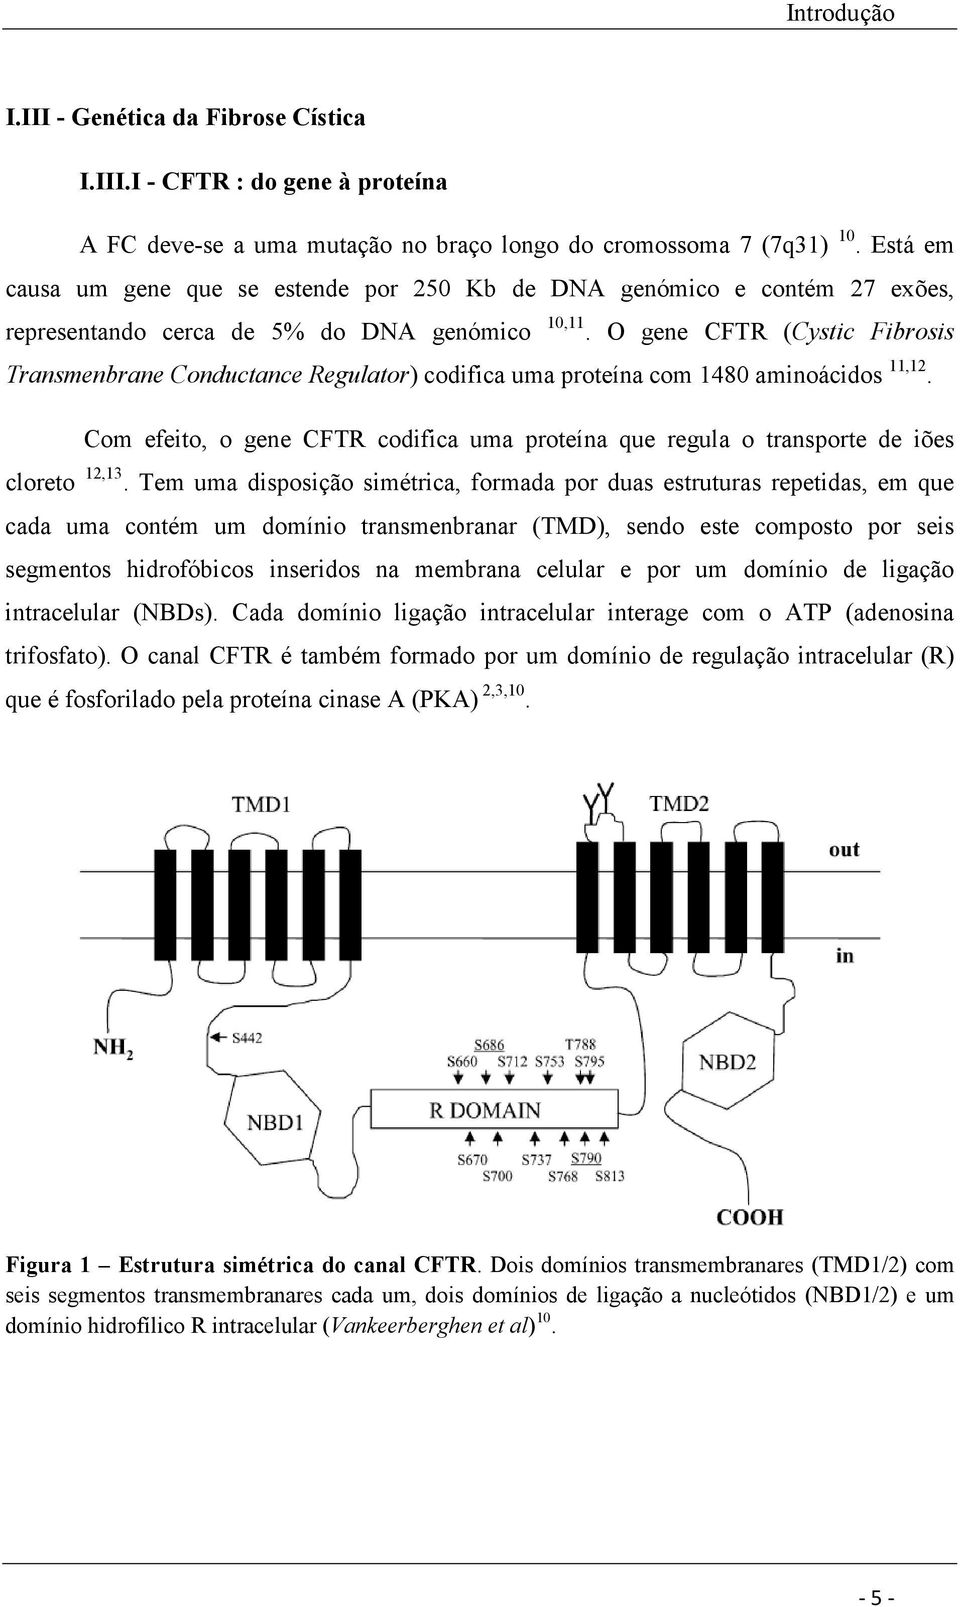 O gene CFTR (Cystic Fibrosis Transmenbrane Conductance Regulator) codifica uma proteína com 1480 aminoácidos 11,12.